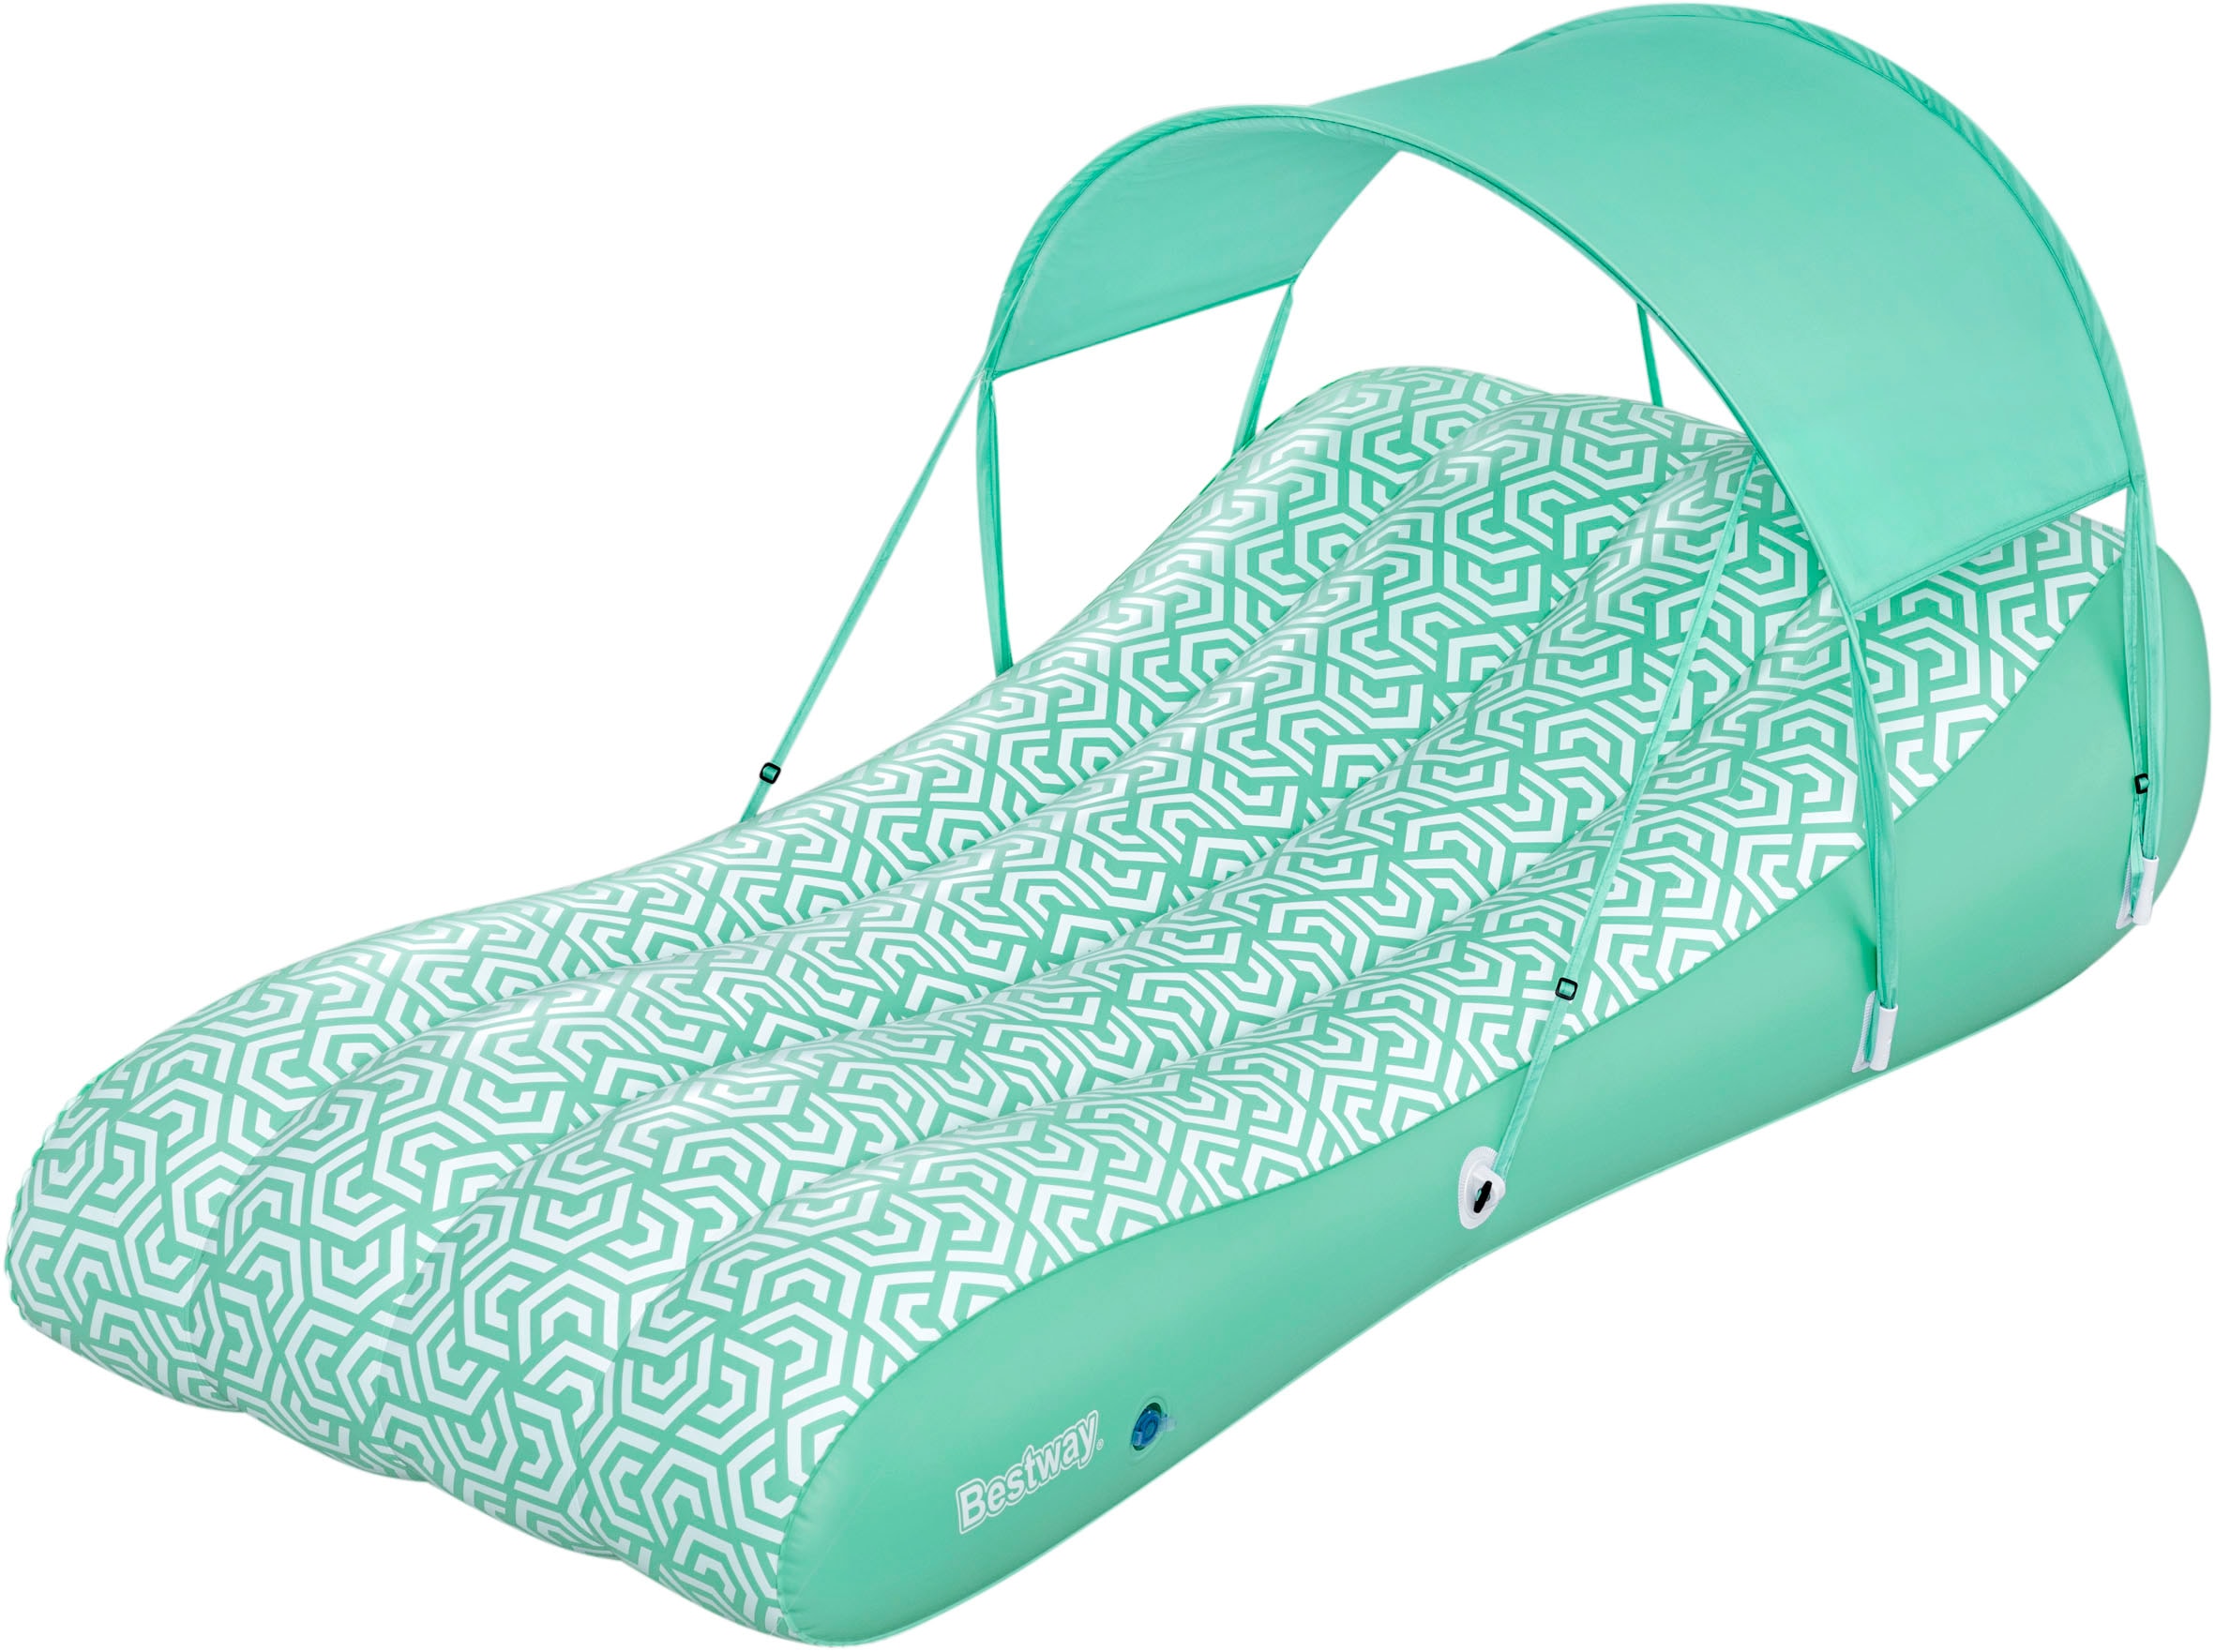 Bestway Luftmatratze "Comfy Chill™", 178x102 cm, mit abnehmbarem Sonnenschutzdach